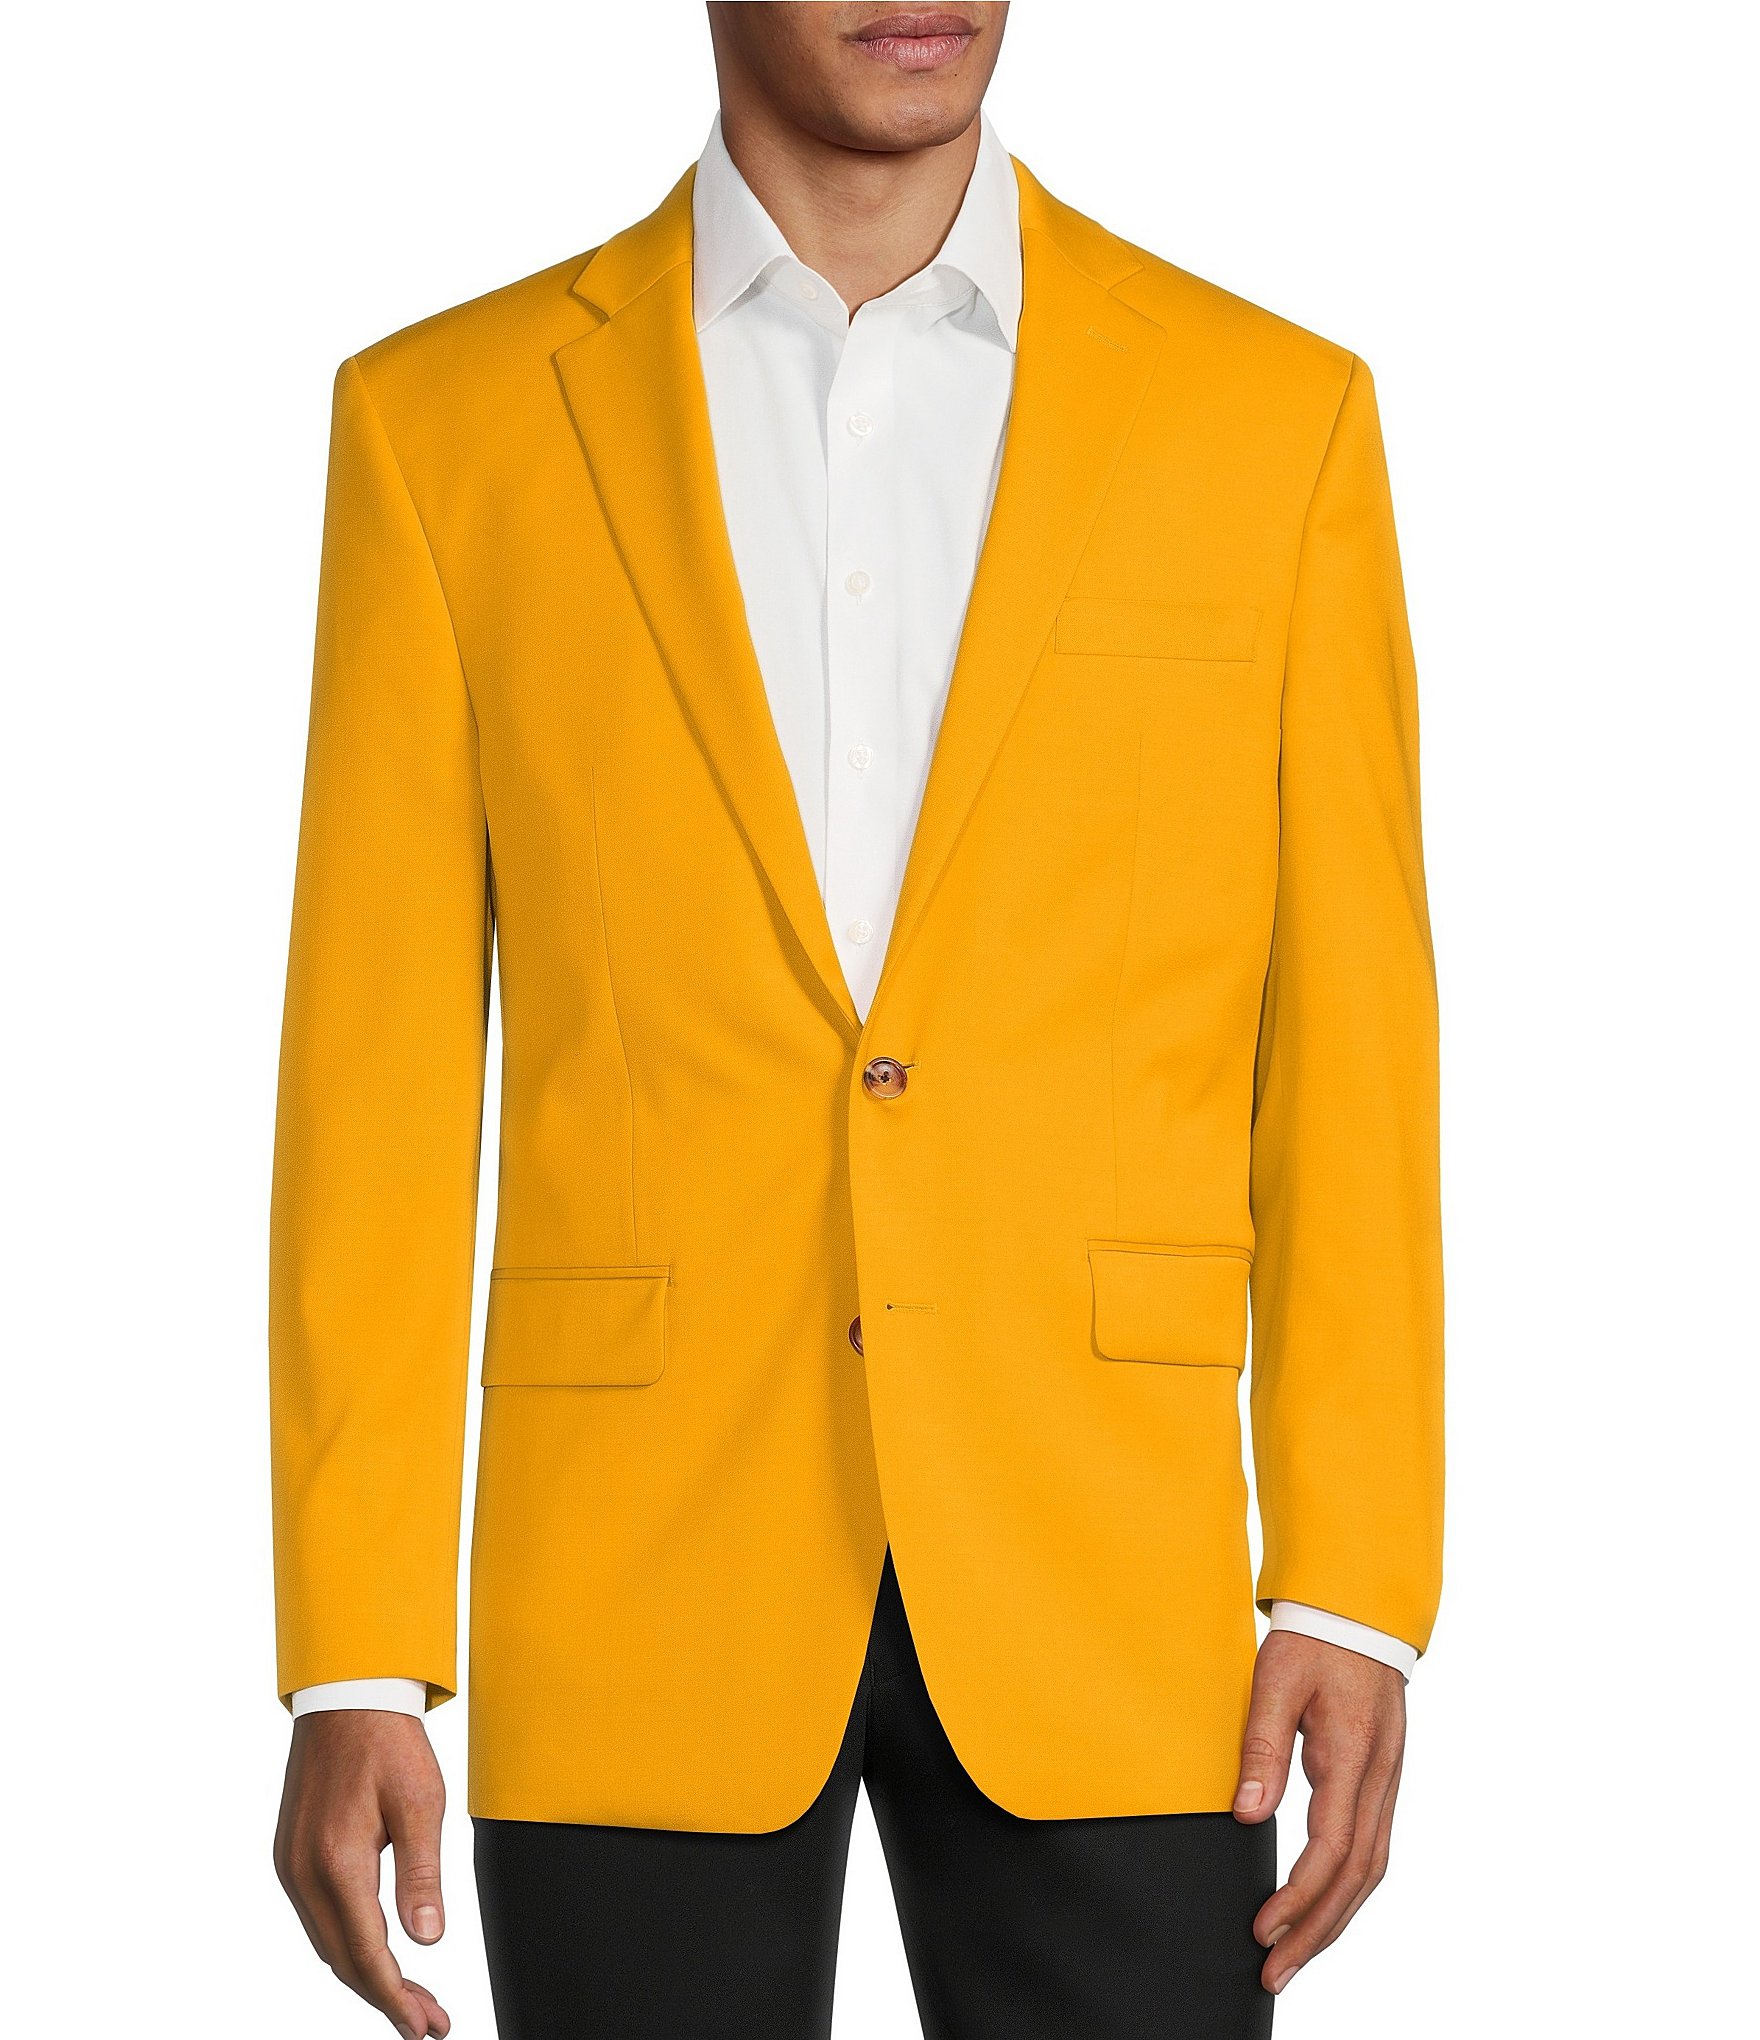 Ralph Lauren Dillard's 46R Brown Houndstooth Blazer Jacket Sport Coat ...